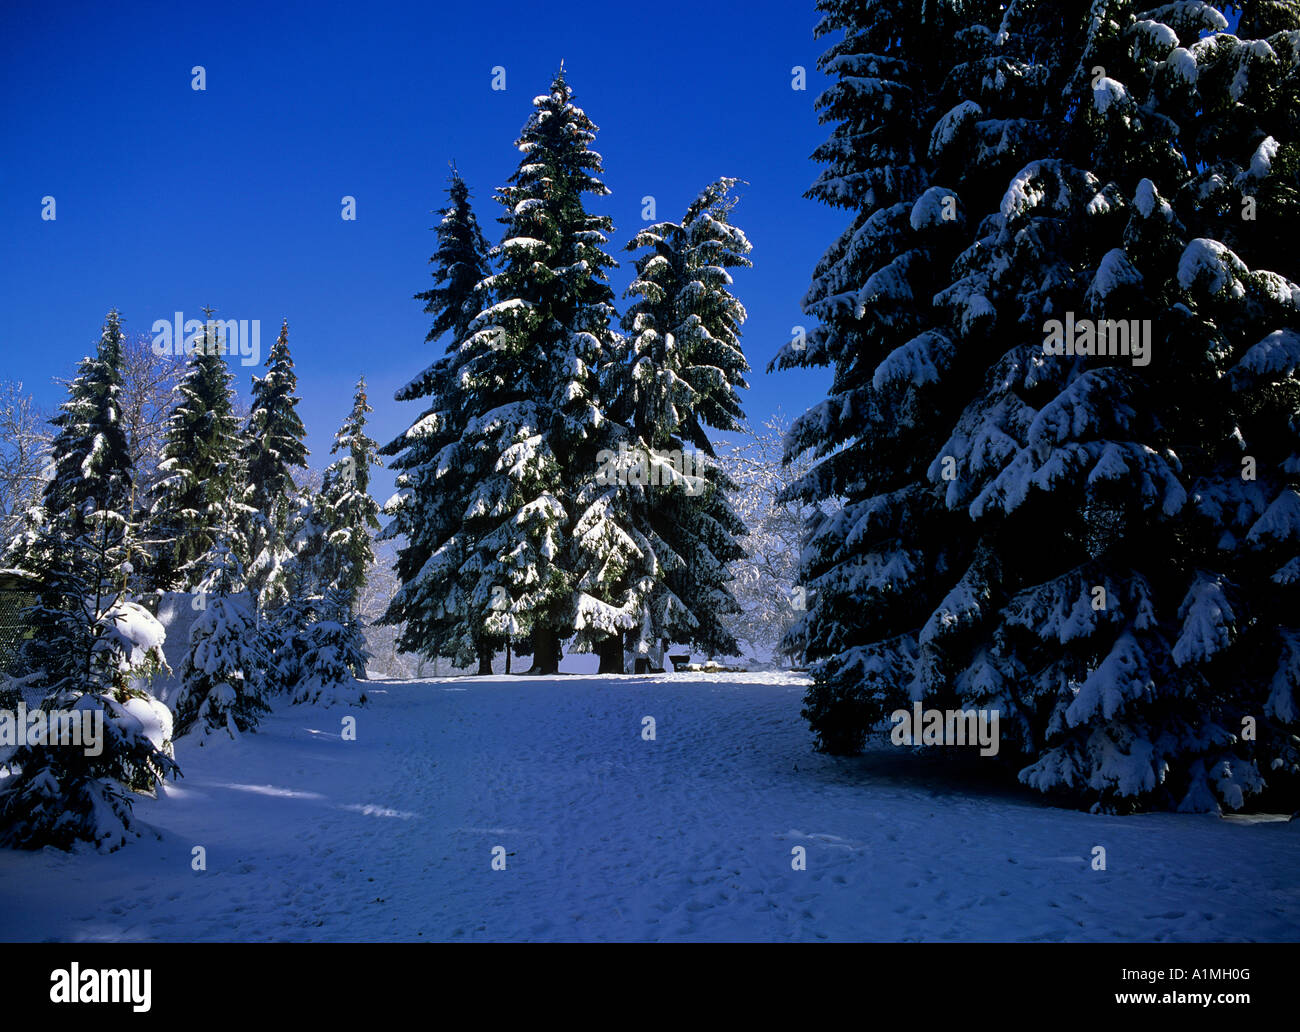 Le impronte sul percorso snowcovered nei giardini pubblici Foto Stock